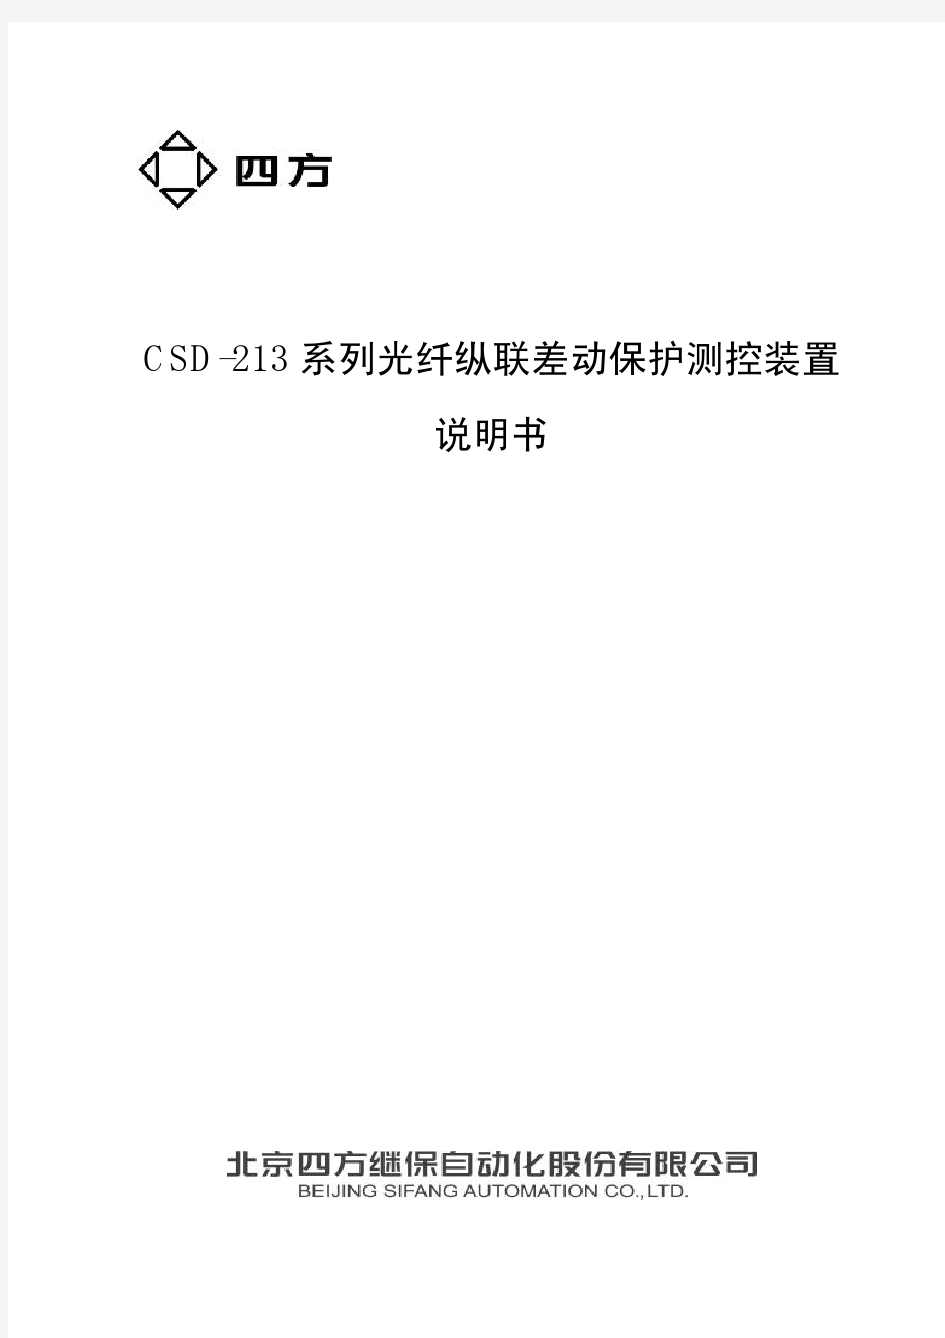 CSD-213系列光纤纵联差动保护测控装置说明书(0SF .451.093)_V1.01新